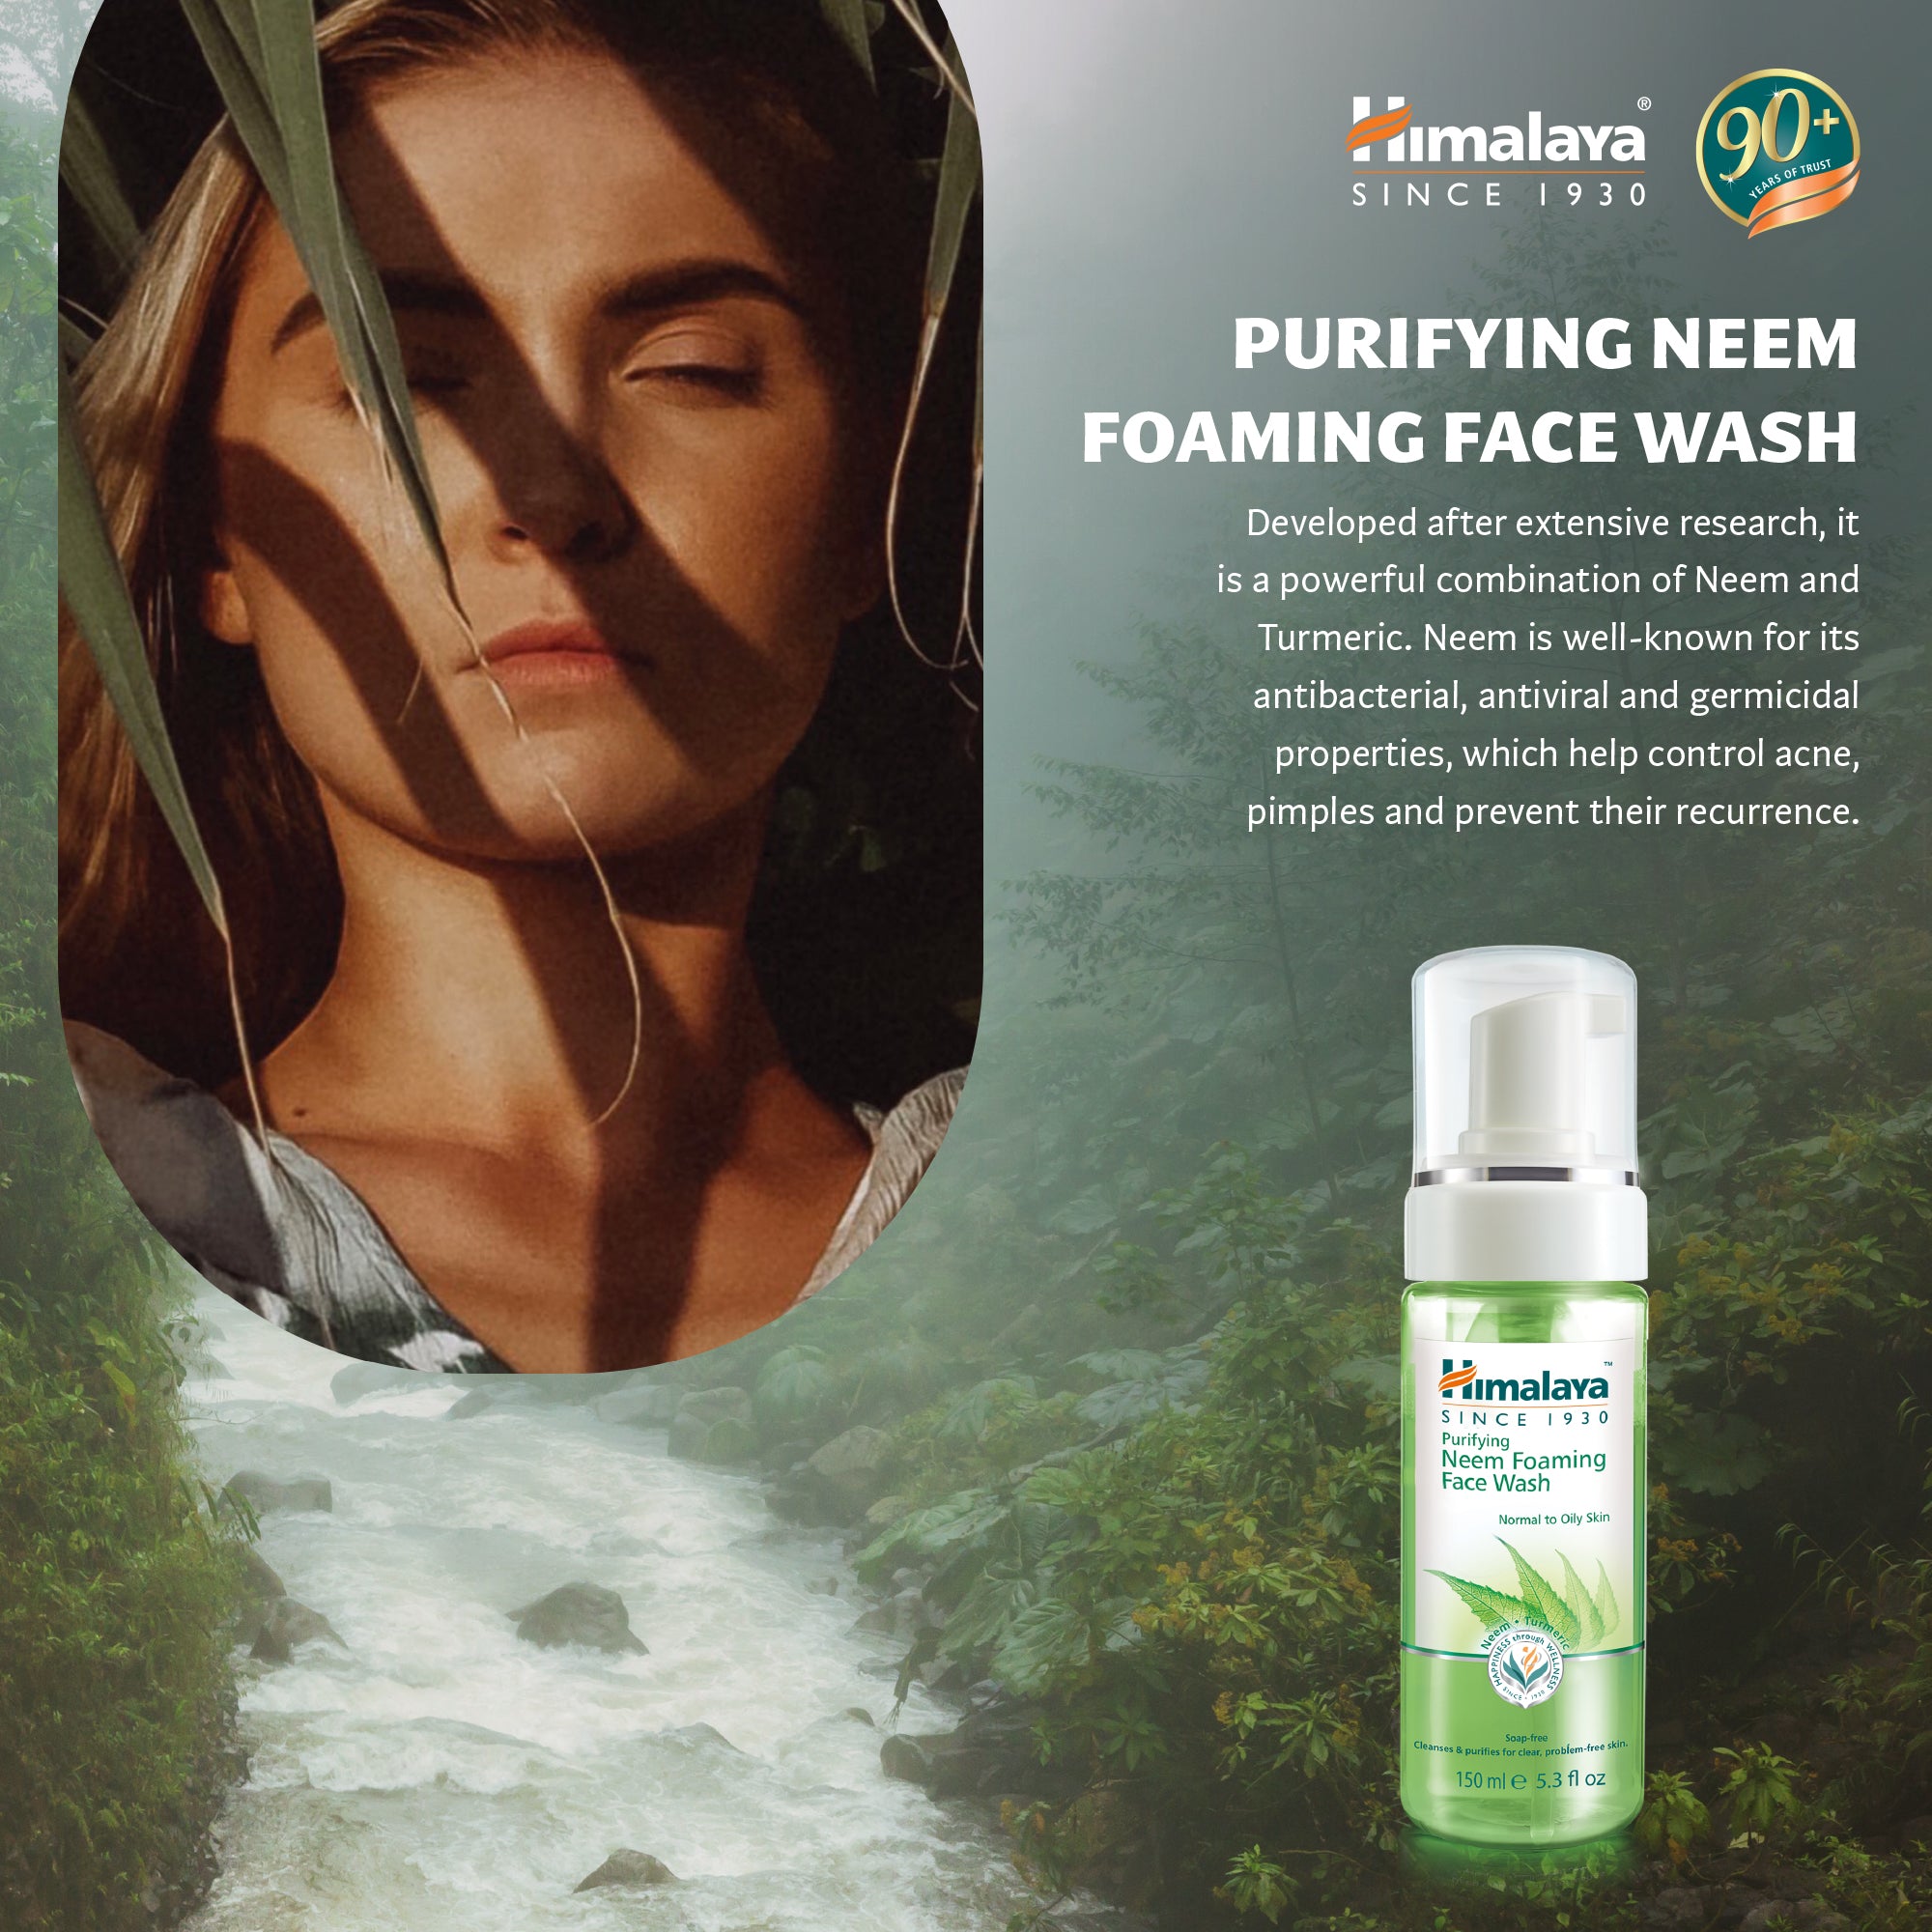 Himalaya Purifying Neem Foaming Face Wash - 150ml